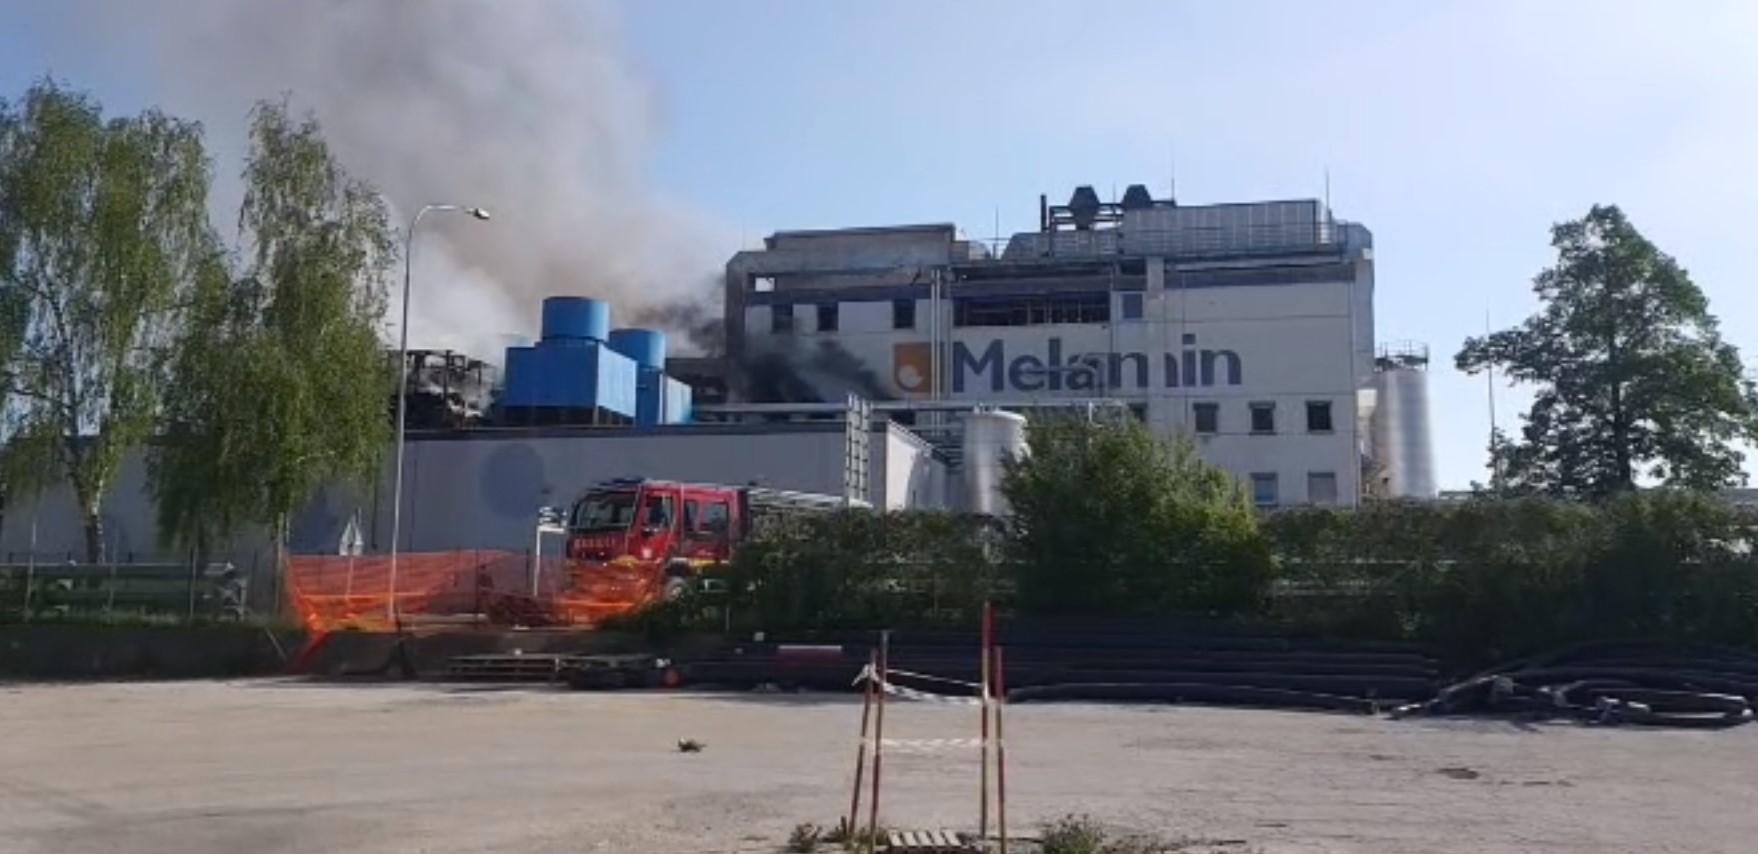 Pogledajte video: Eksplozija u hemijskoj fabrici u Sloveniji, više od 10 osoba povrijeđeno